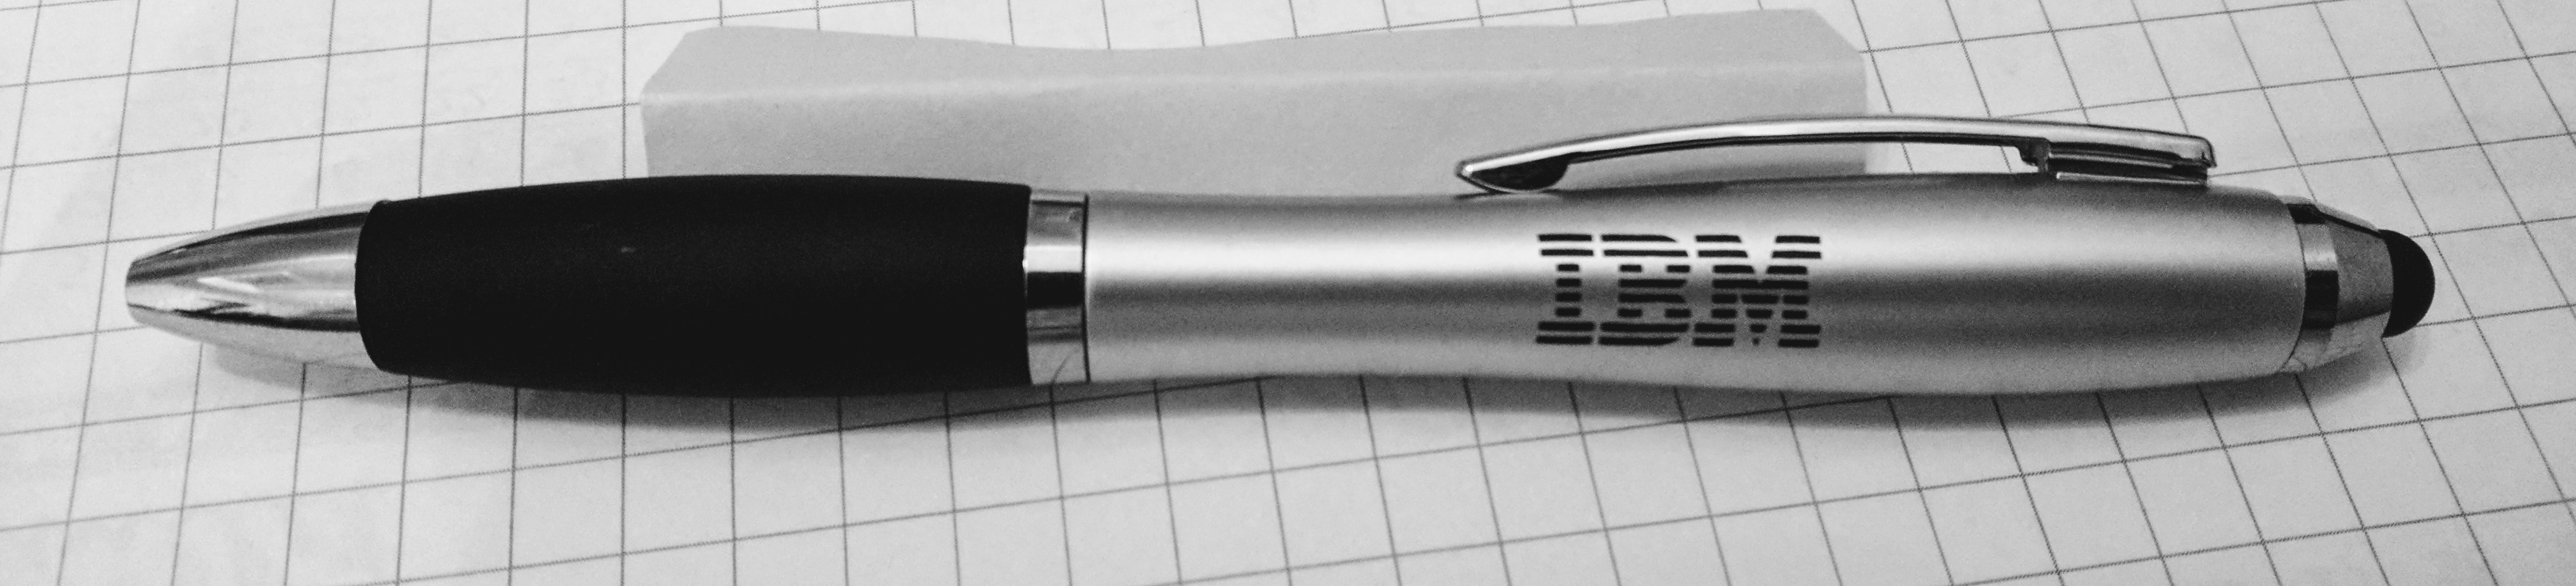 IBM branded pen, 2016